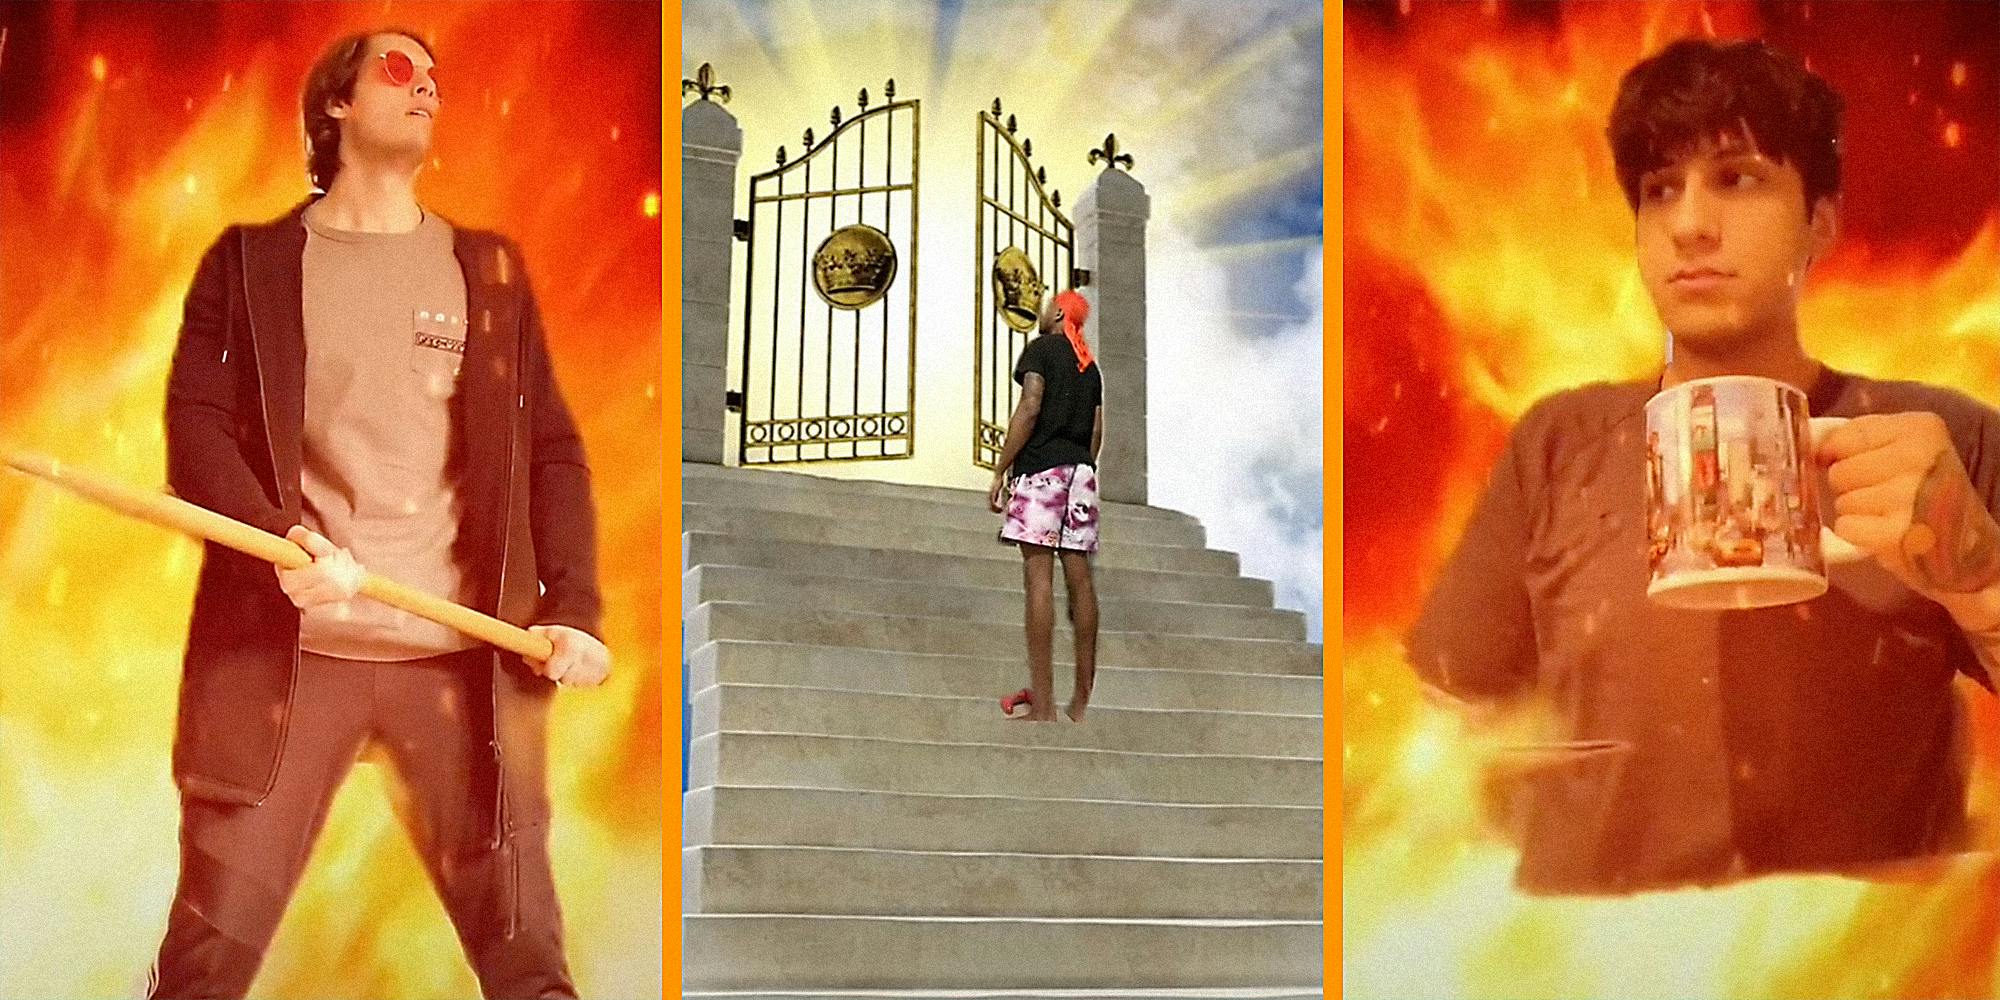 Lil Nas X Sliding Into Hell Becomes a TikTok Meme